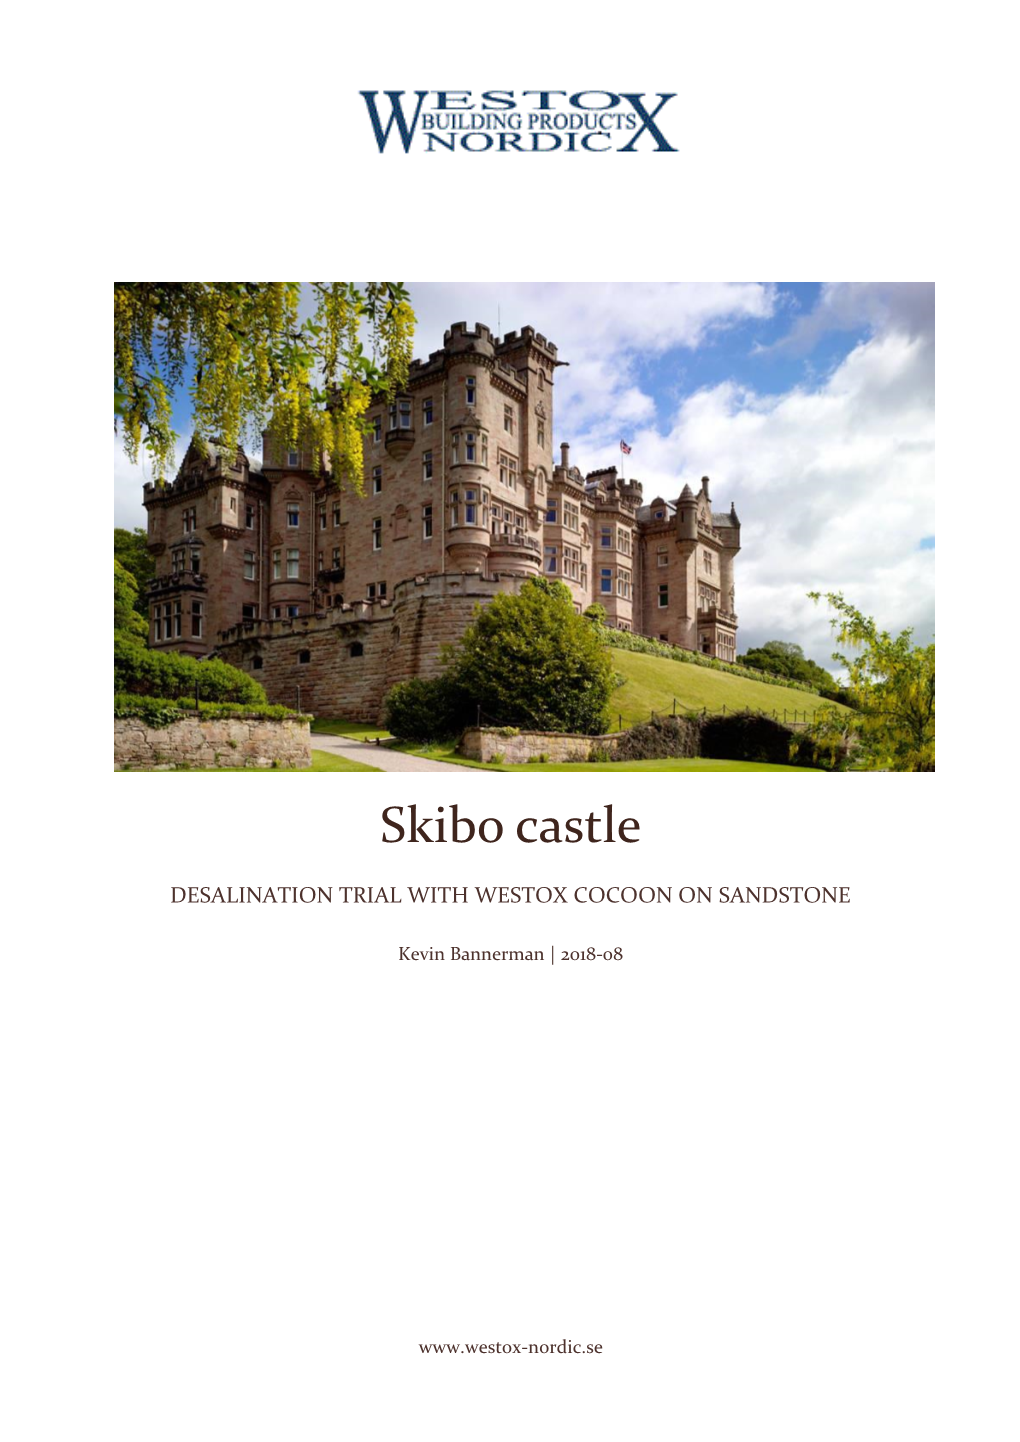 Skibo Castle